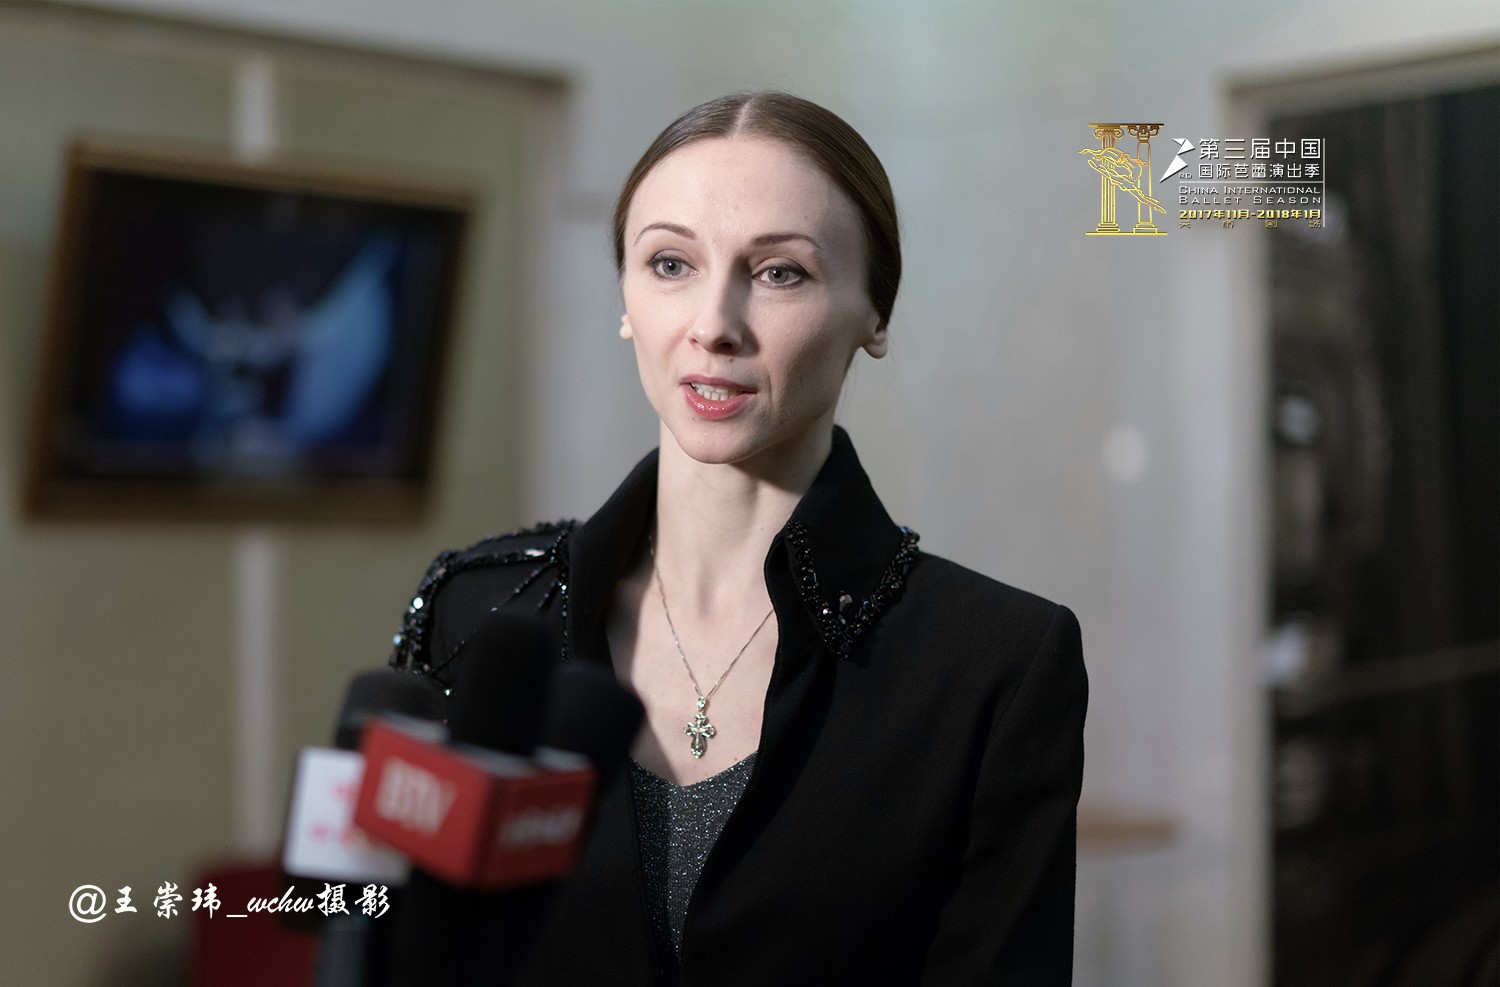 芭蕾巨星斯维兰特娜.扎哈洛娃在演出前接受新闻媒体采访时表情图